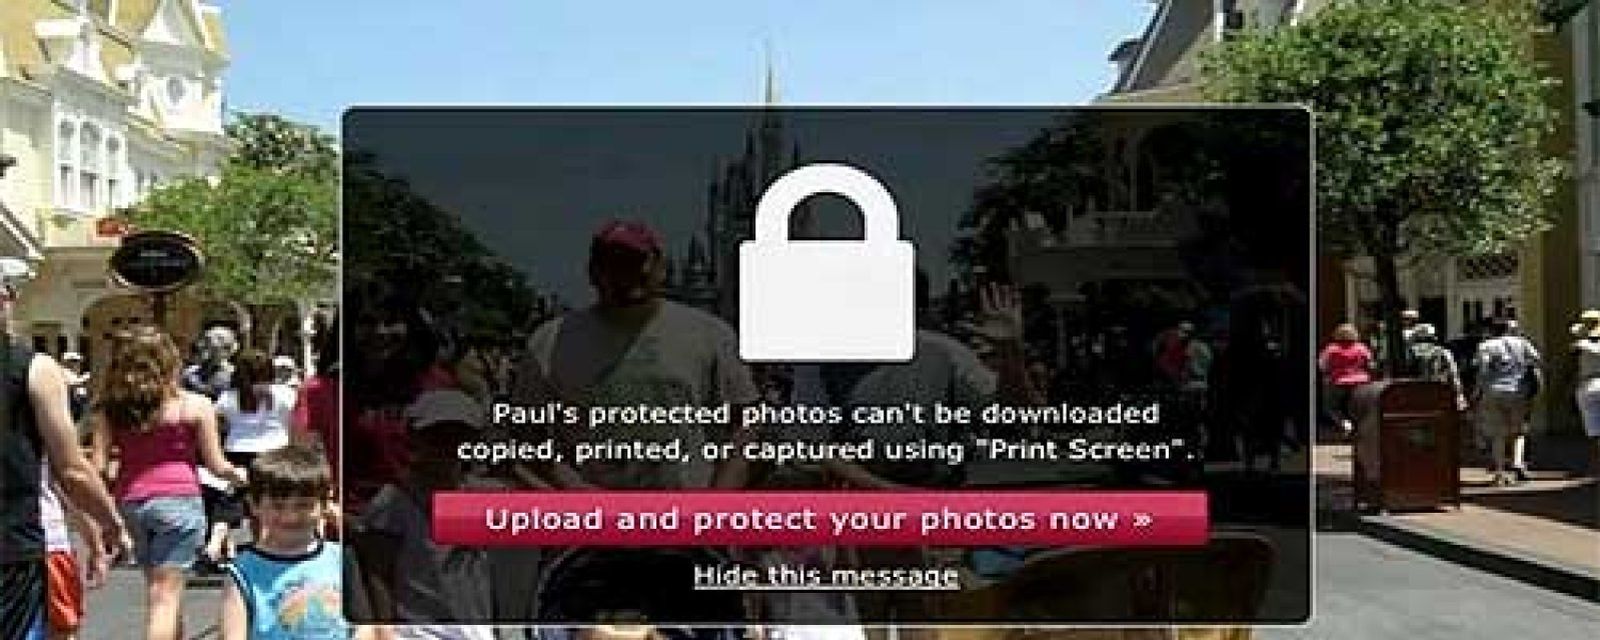 Foto: Facebook y McAfee se alían para blindar las fotos y que no sean descargadas